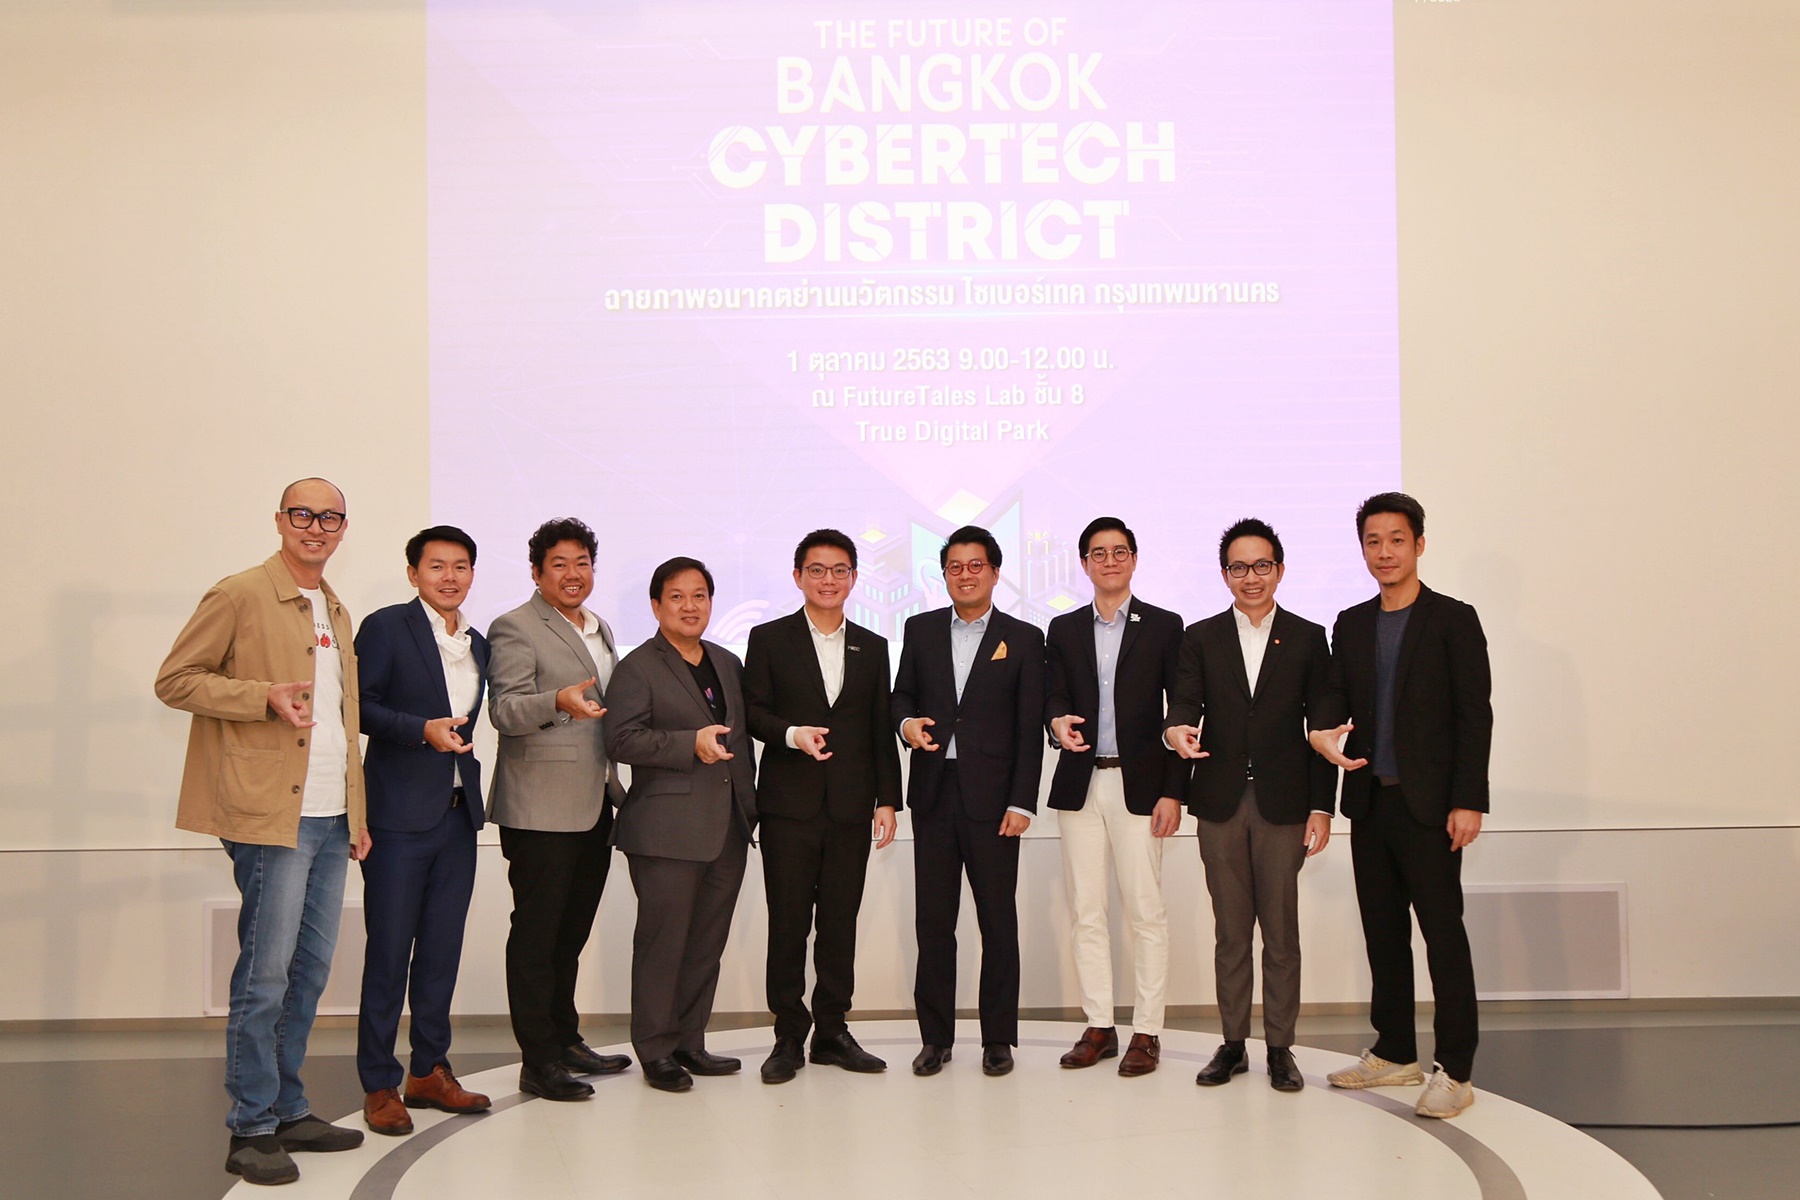 สำนักงานนวัตกรรมแห่งชาติ ผนึก ทรู ดิจิทัล พาร์ค และเหล่าพันธมิตร ร่วมเสวนาขับเคลื่อน Bangkok CyberTech District สู่ศูนย์กลางดิจิทัลและไลฟ์สไตล์ ของคนเมืองยุคใหม่